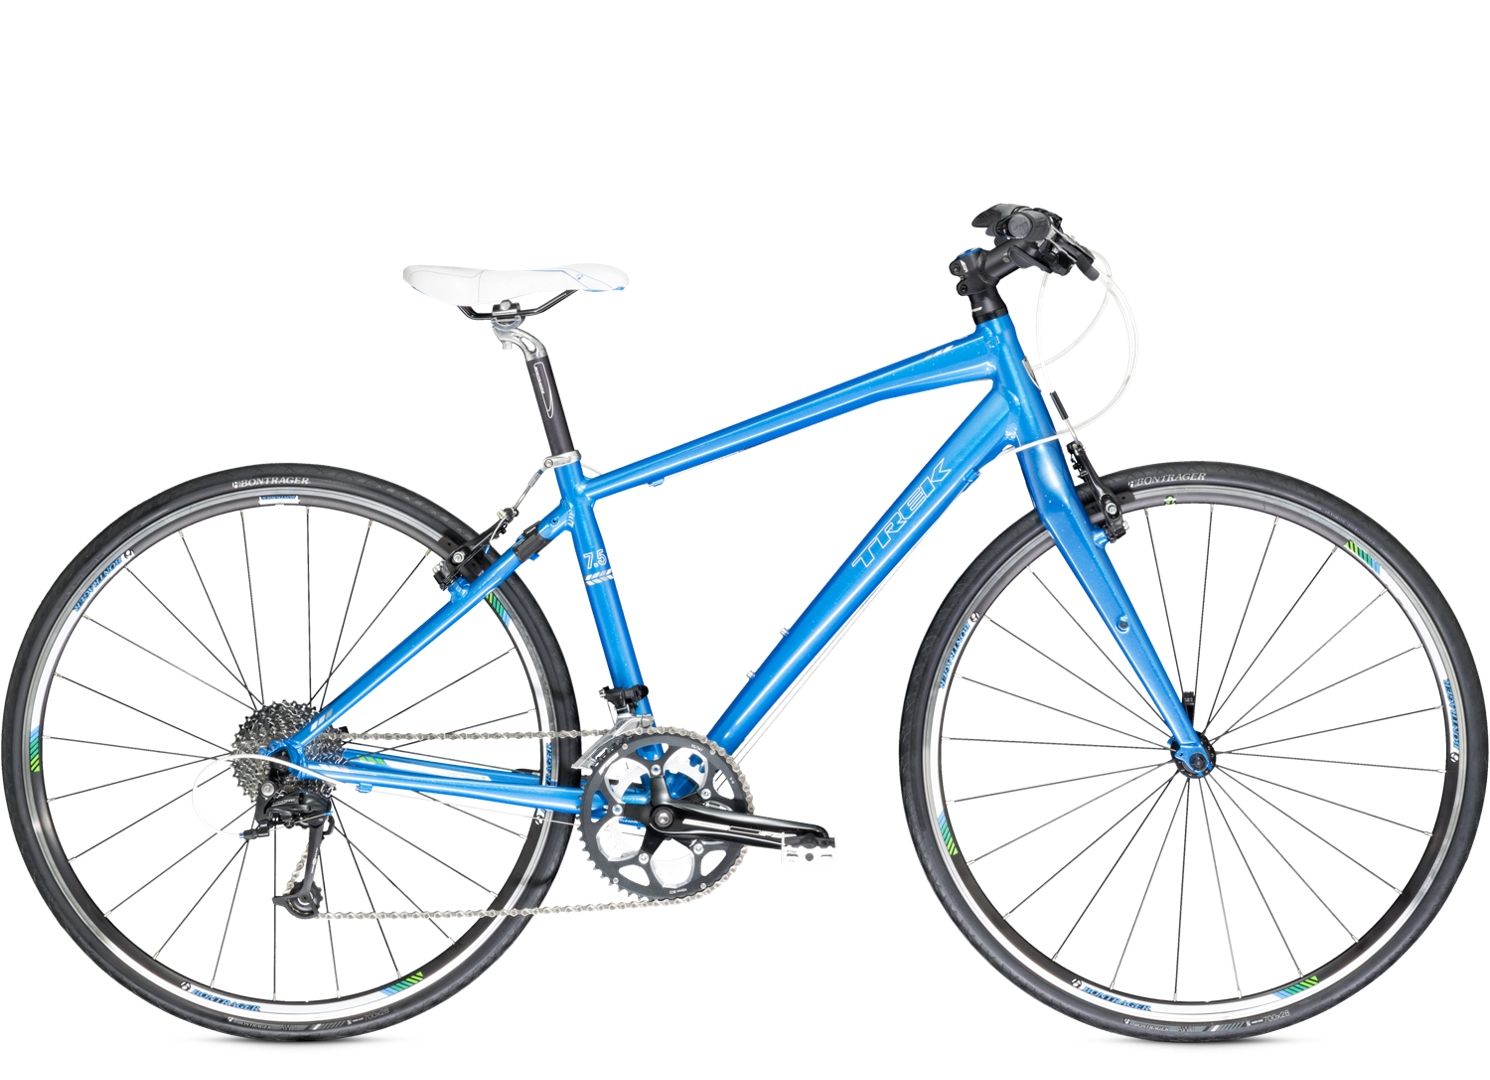  Отзывы о Женском велосипеде Trek 7.5 FX WSD 2014